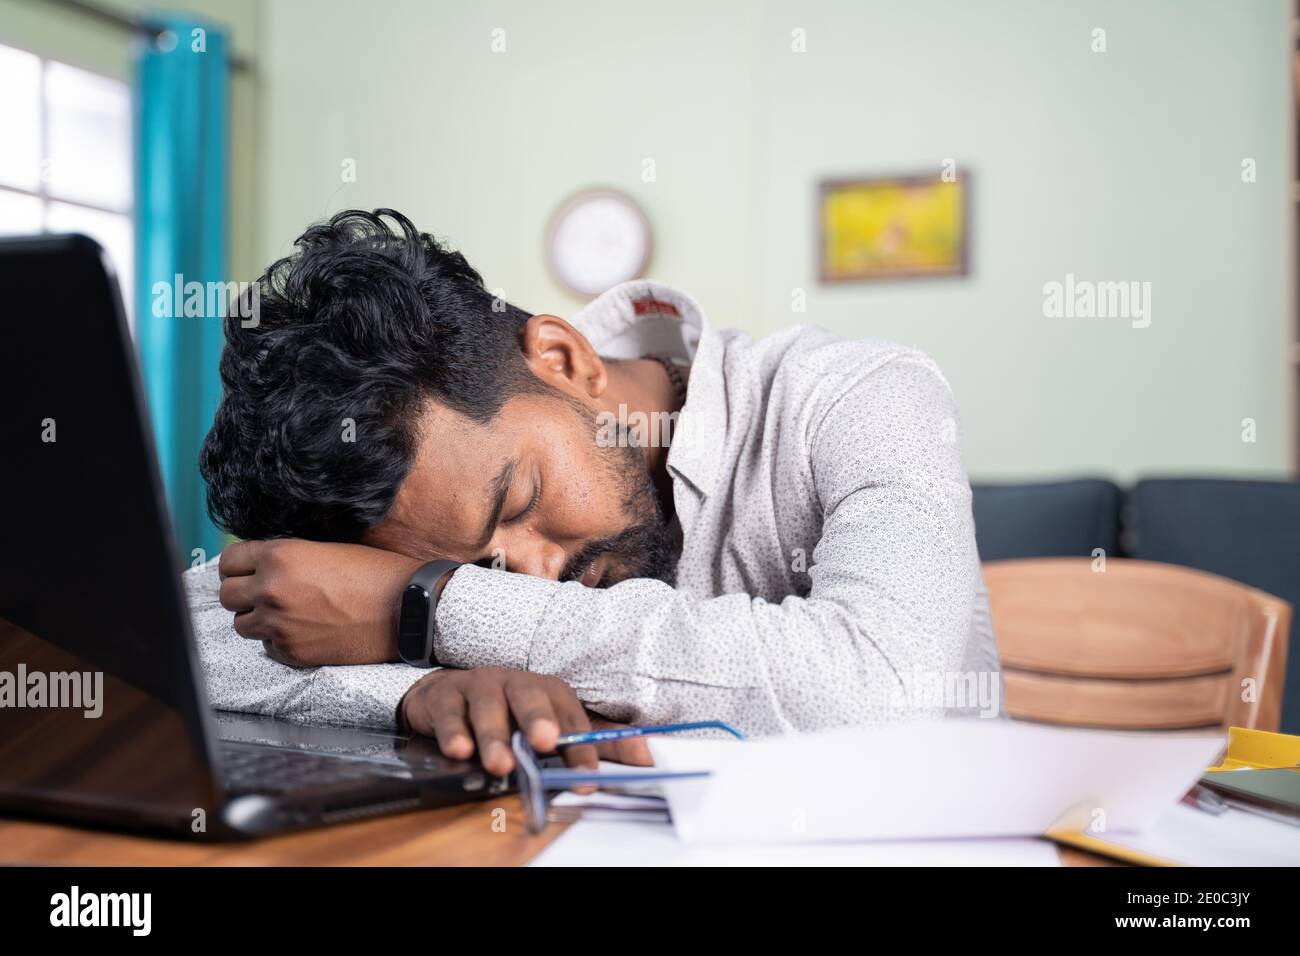 El joven se cansó de trabajar y dormía en el escritorio - agotada milenial quedarse dormido después de leer en el ordenador portátil - concepto de siesta en el lugar de trabajo Foto de stock